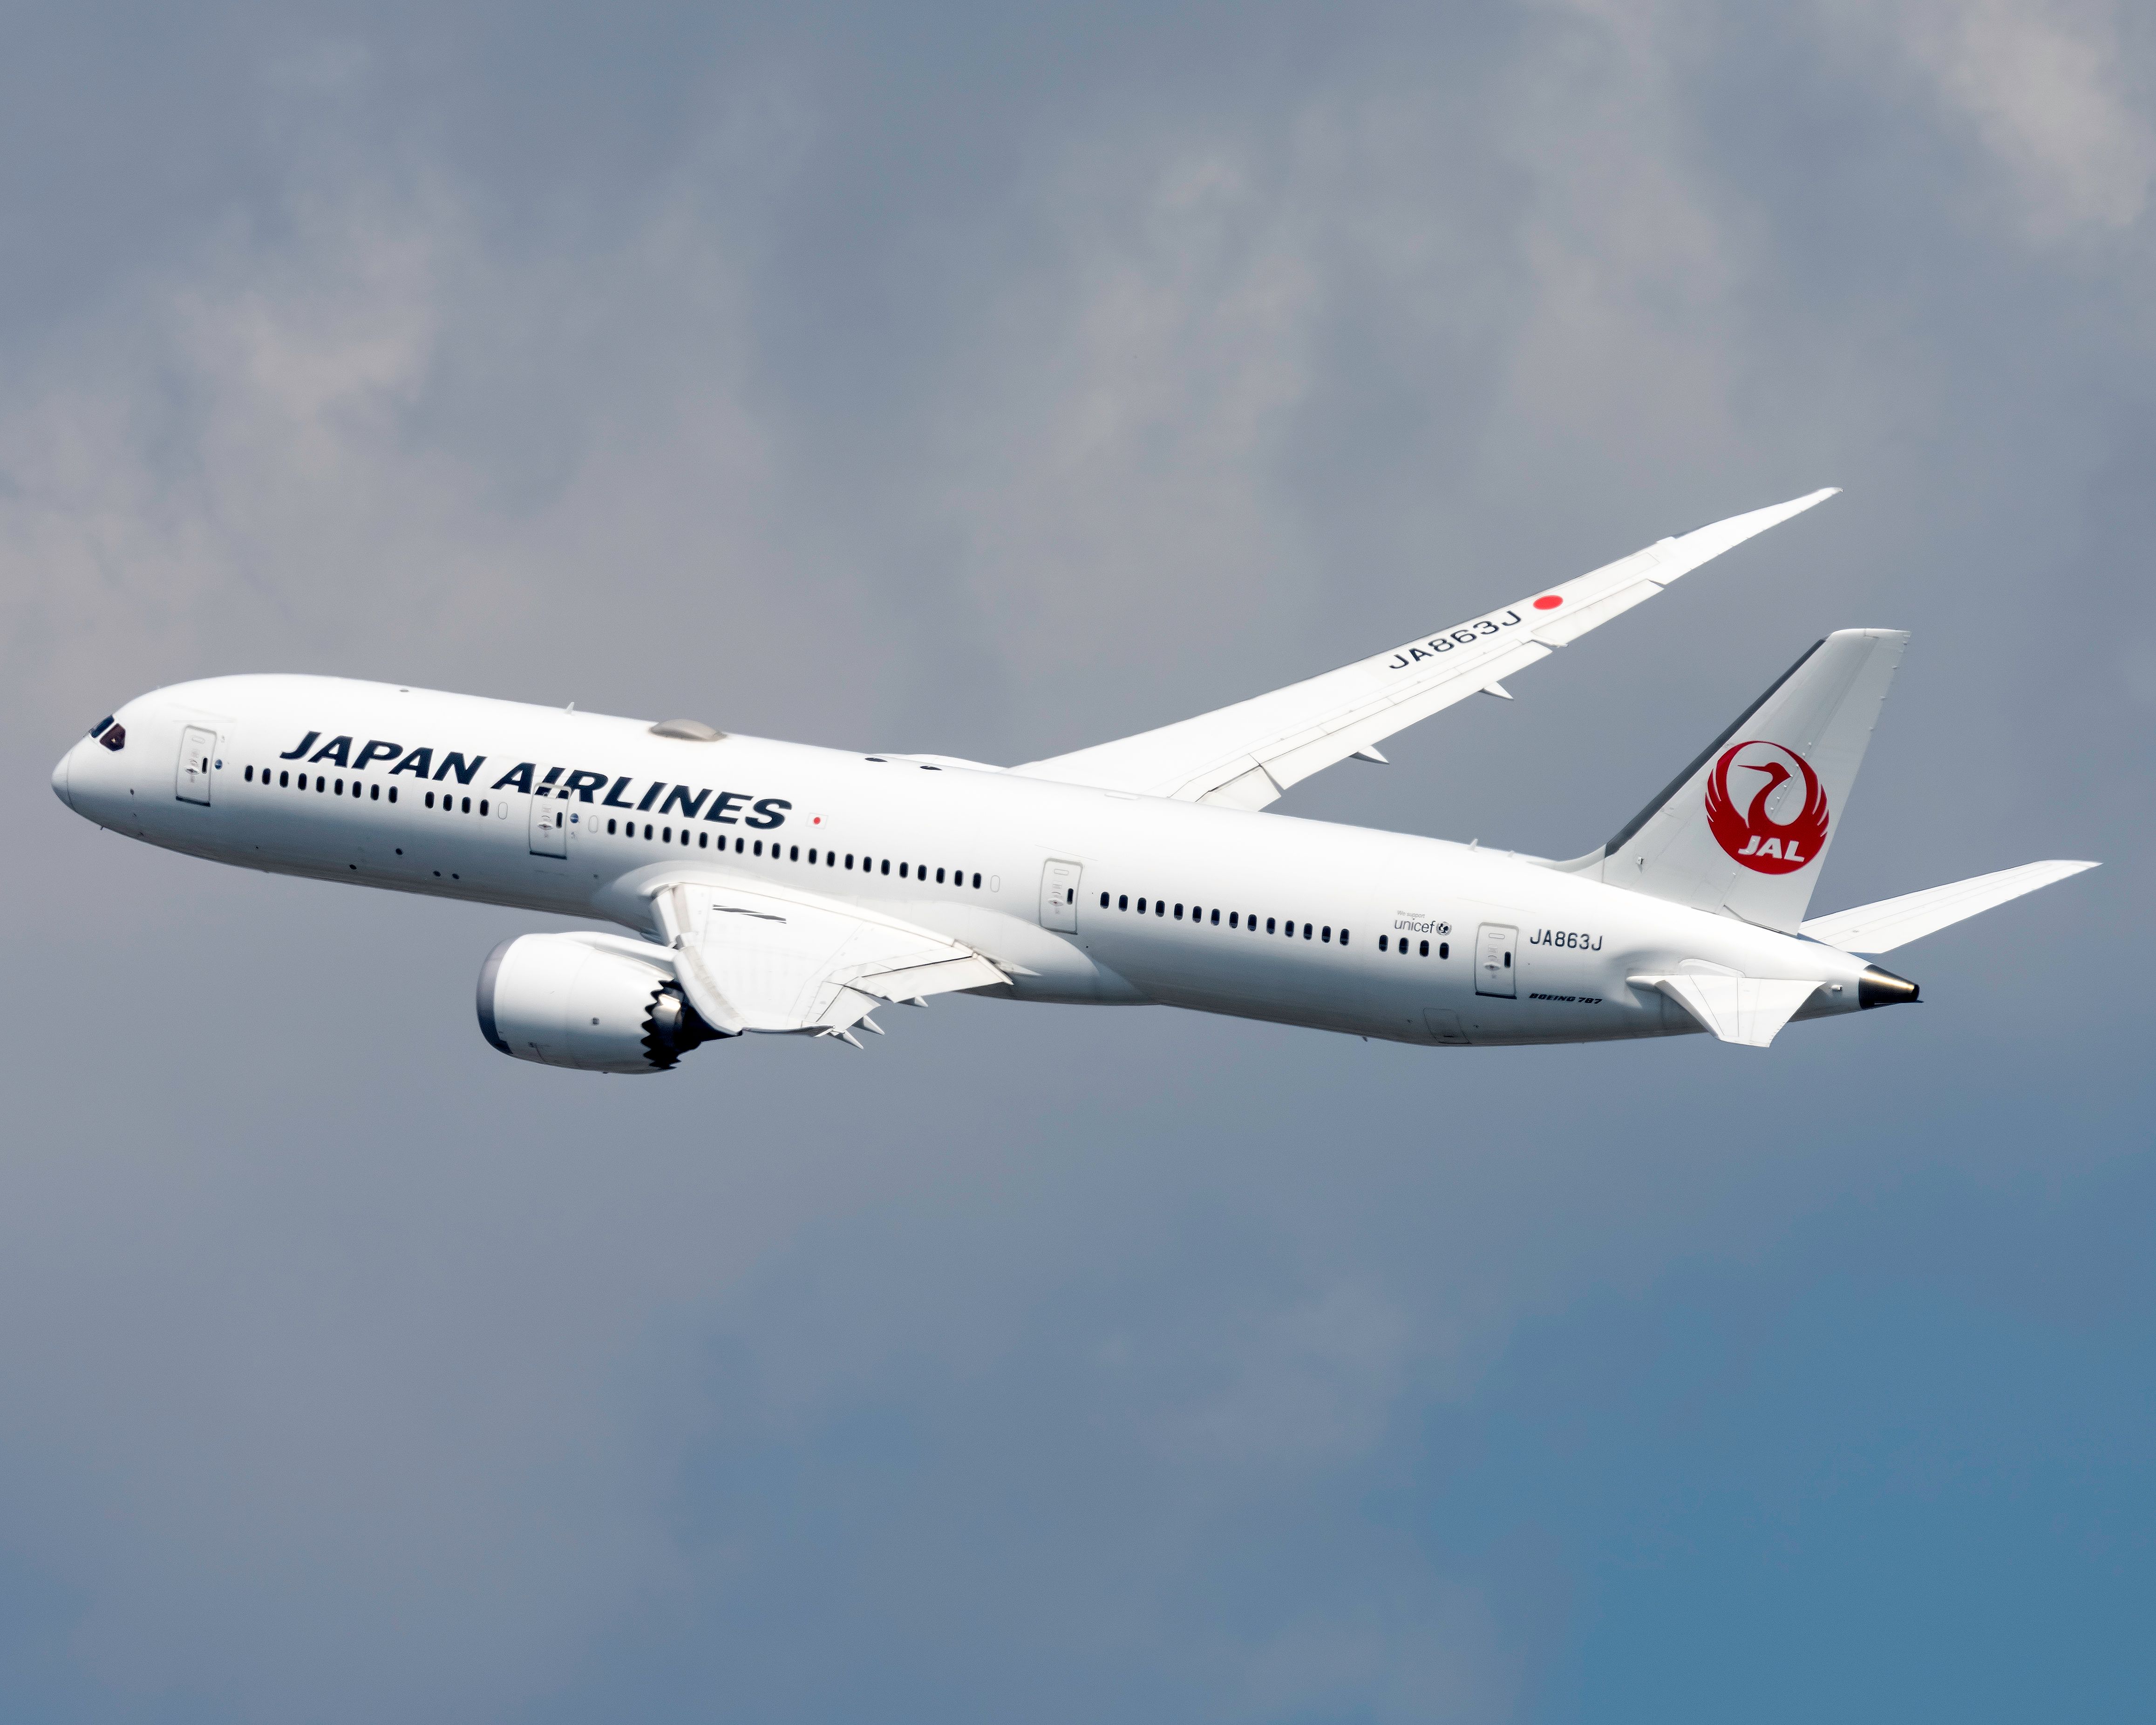 Japan Airlines Boeing 787-9 Dreamliner